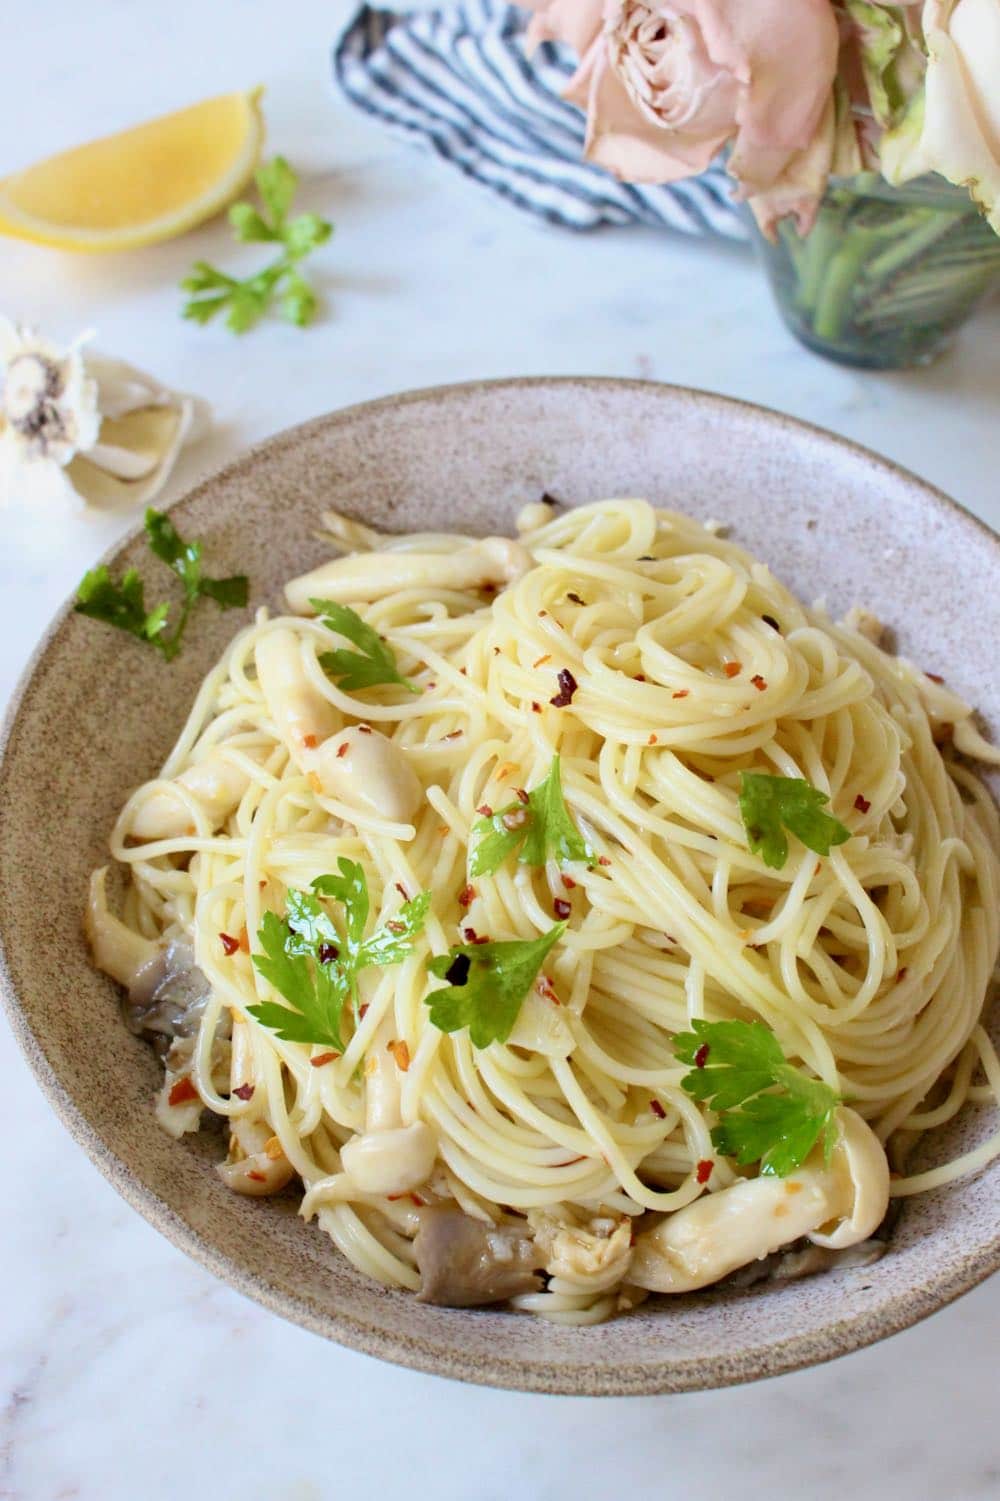 Vegan Spaghetti Aglio e Olio Recipe (Garlic and Oil Pasta)